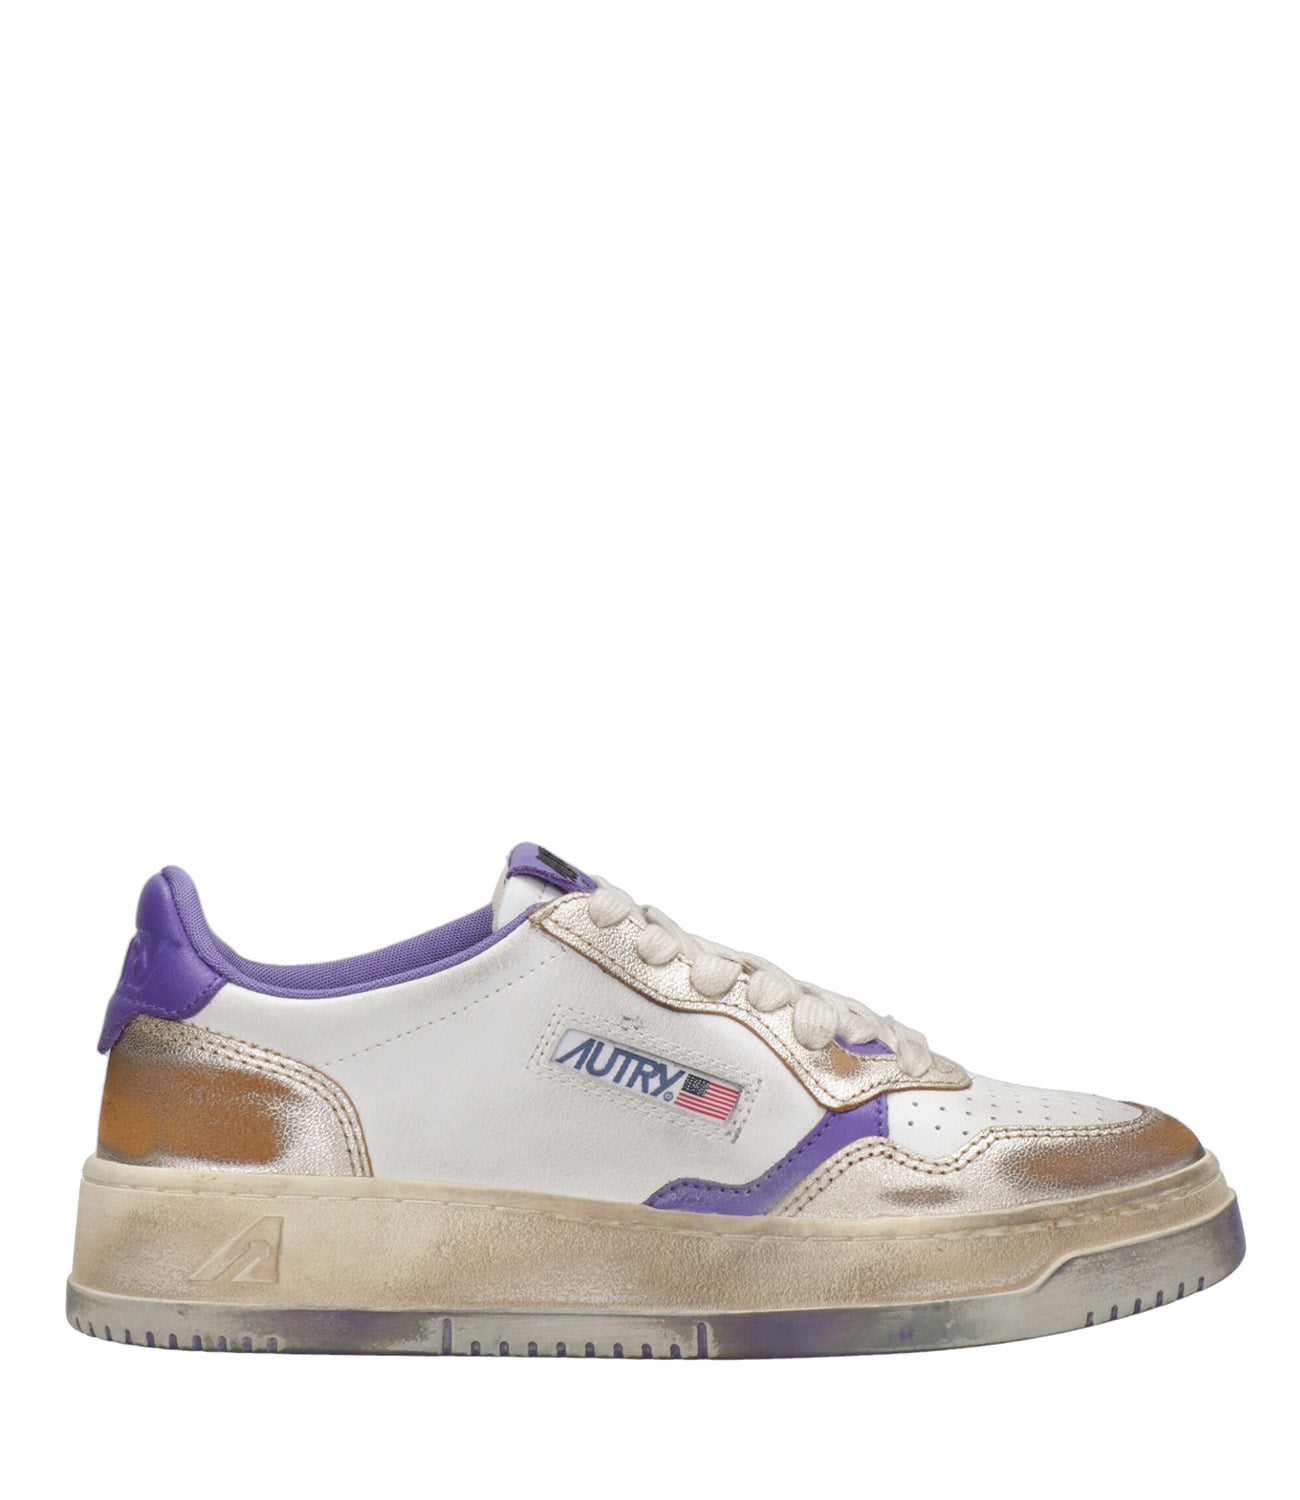 Autry | Sneakers Sup Vint Low Bianco e Viola